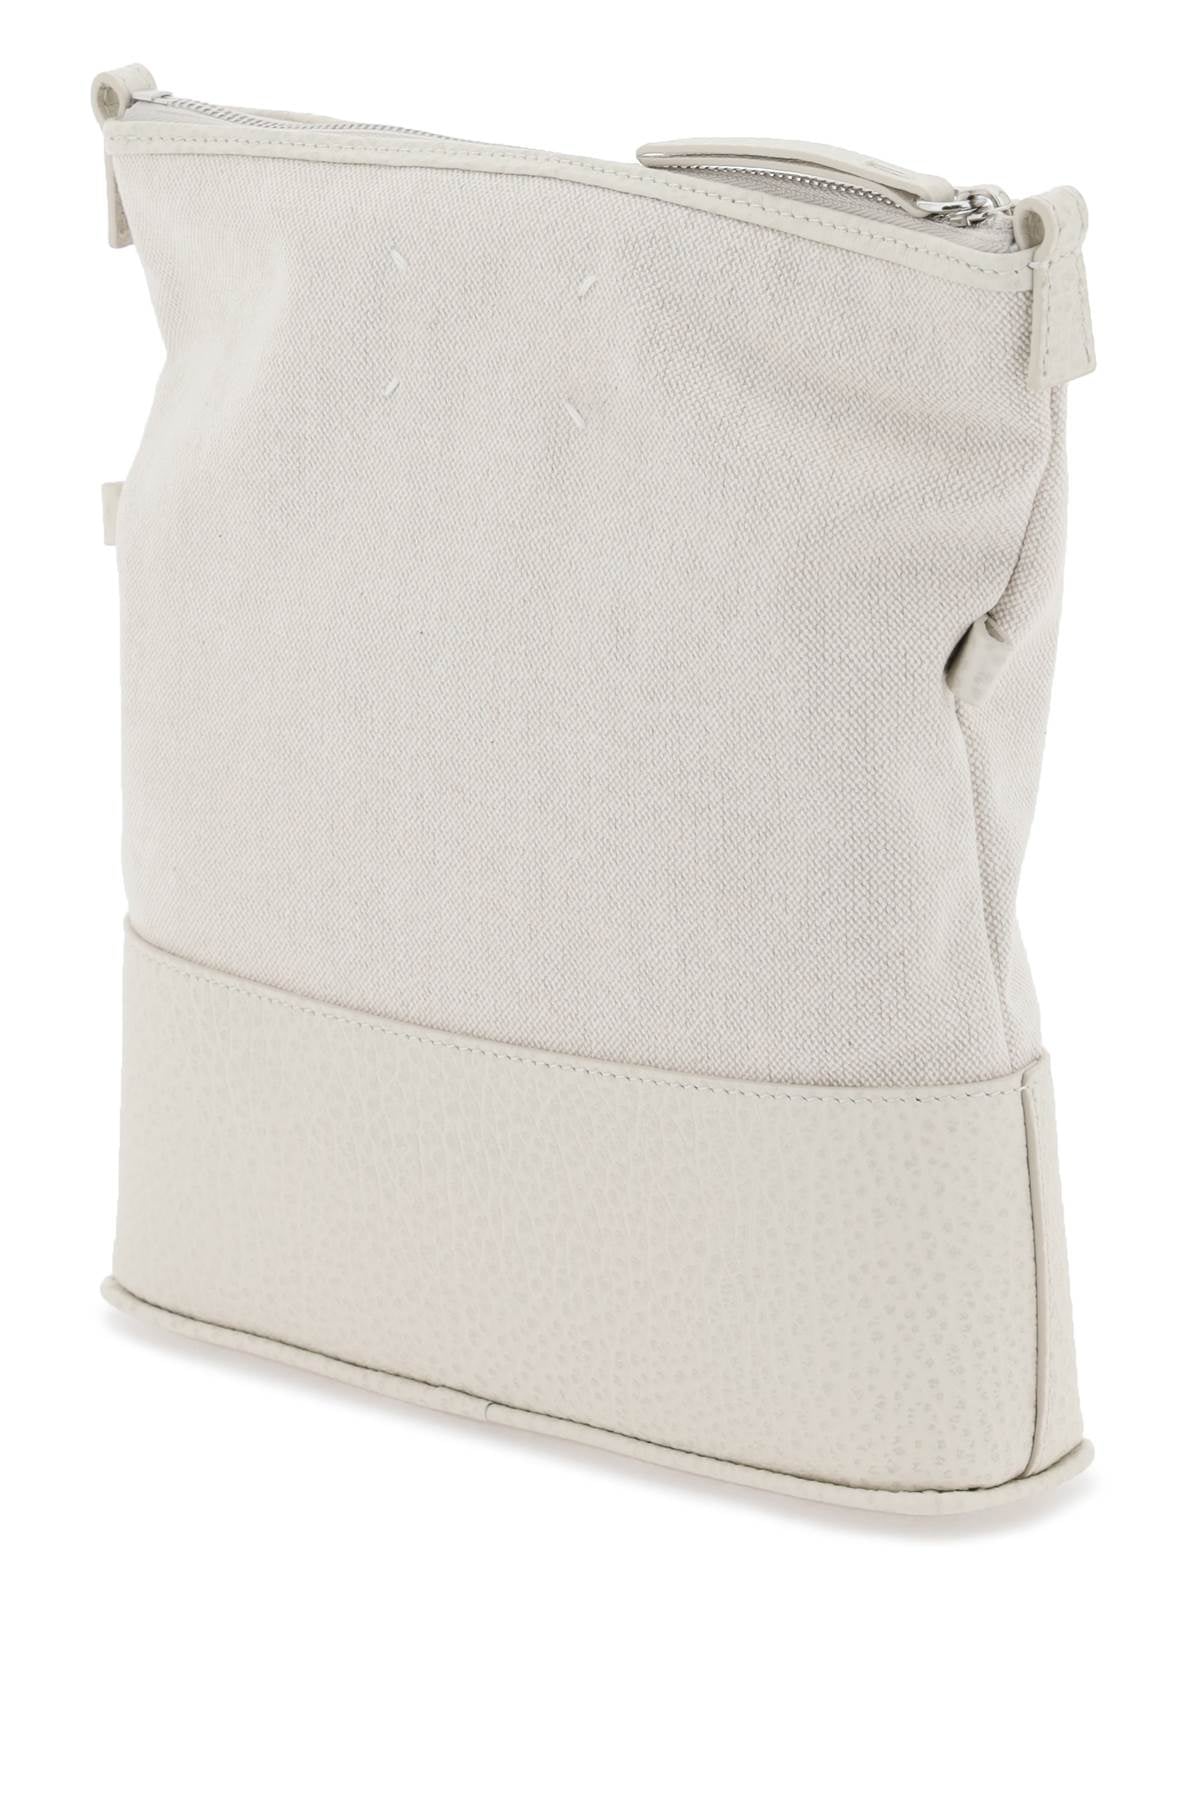 白色棉混纺帆布手袋可拆卸肩带